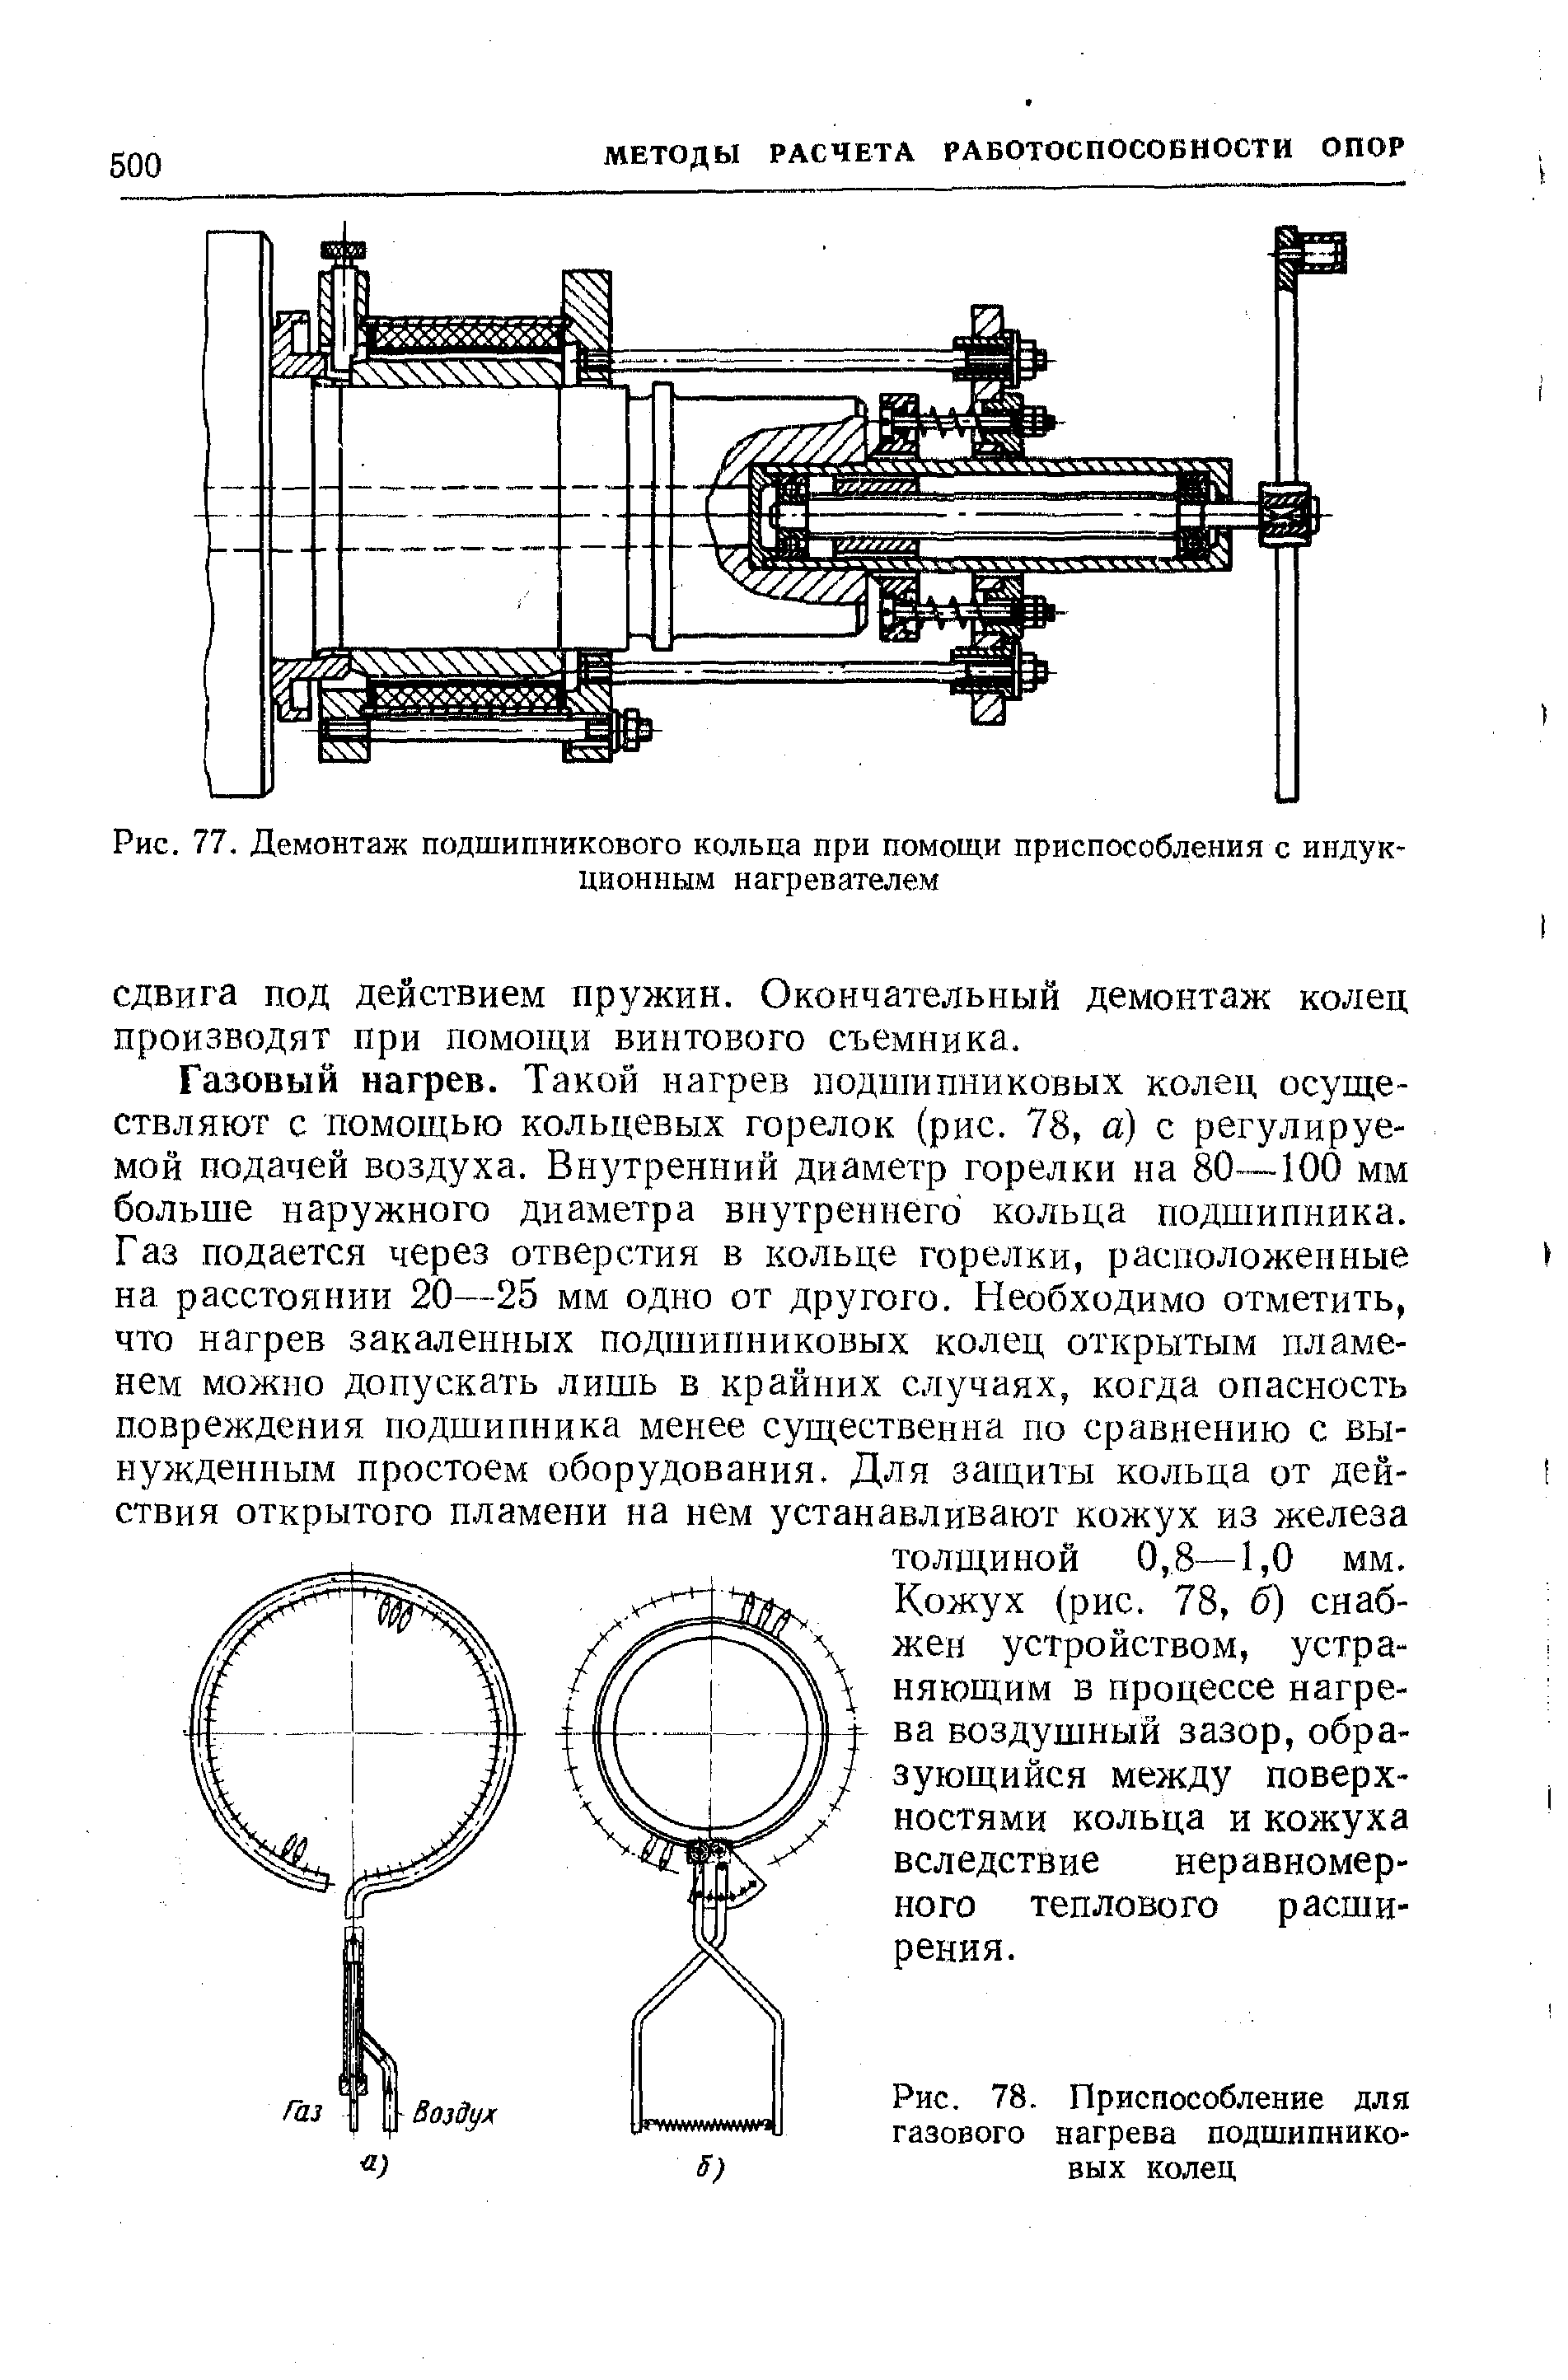 Рис. 77. Демонтаж подшипникового кольца при помощи приспособления с индукционным нагревателем
